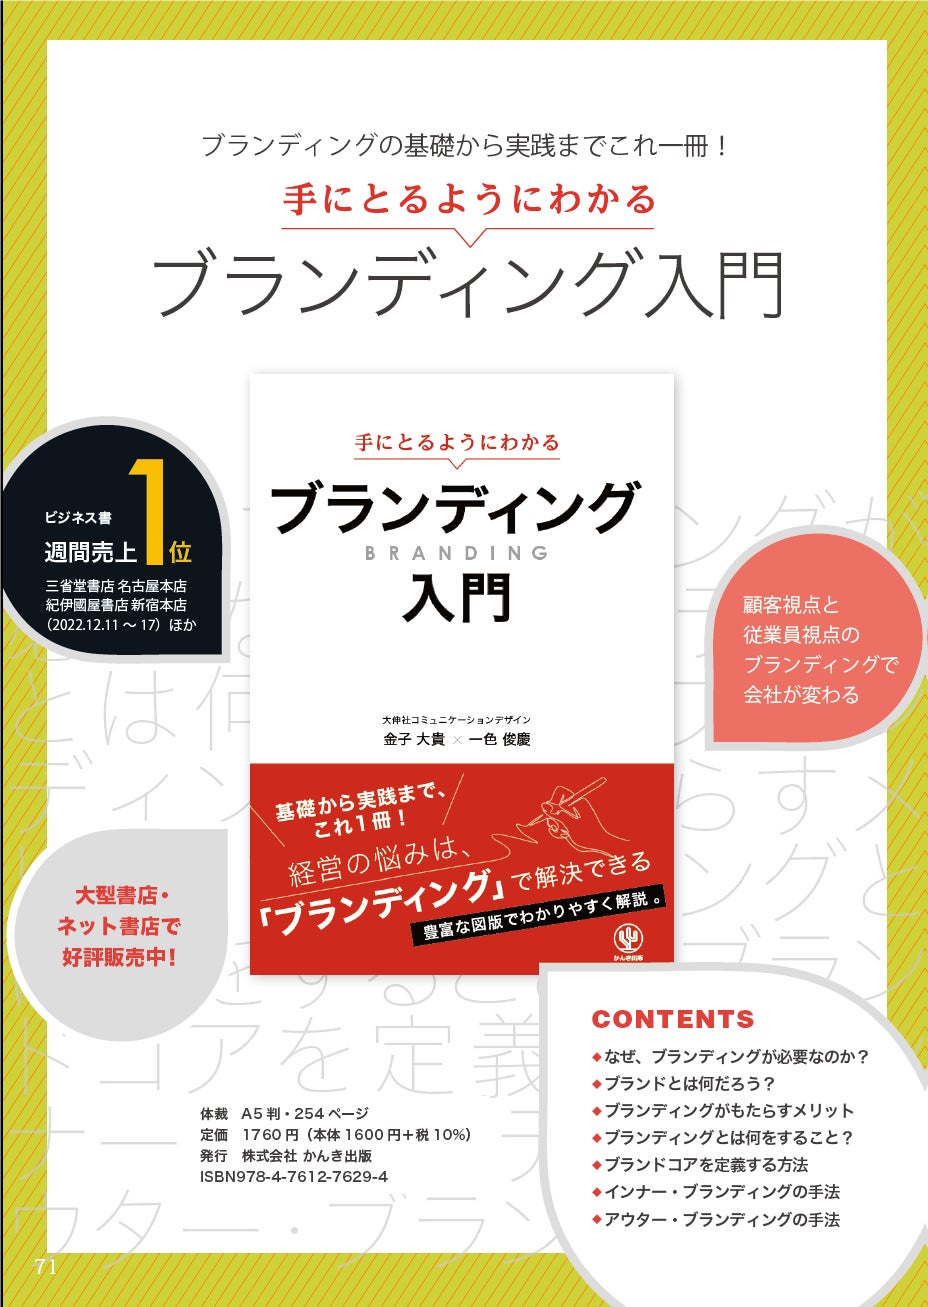 大伸社コミュニケーションデザインは、2 月7 日(水)～2 月9 日(金)までの3 日間に東京ビッグサイトで開催される「経営支援EXPO」に出展いたします。のサブ画像2